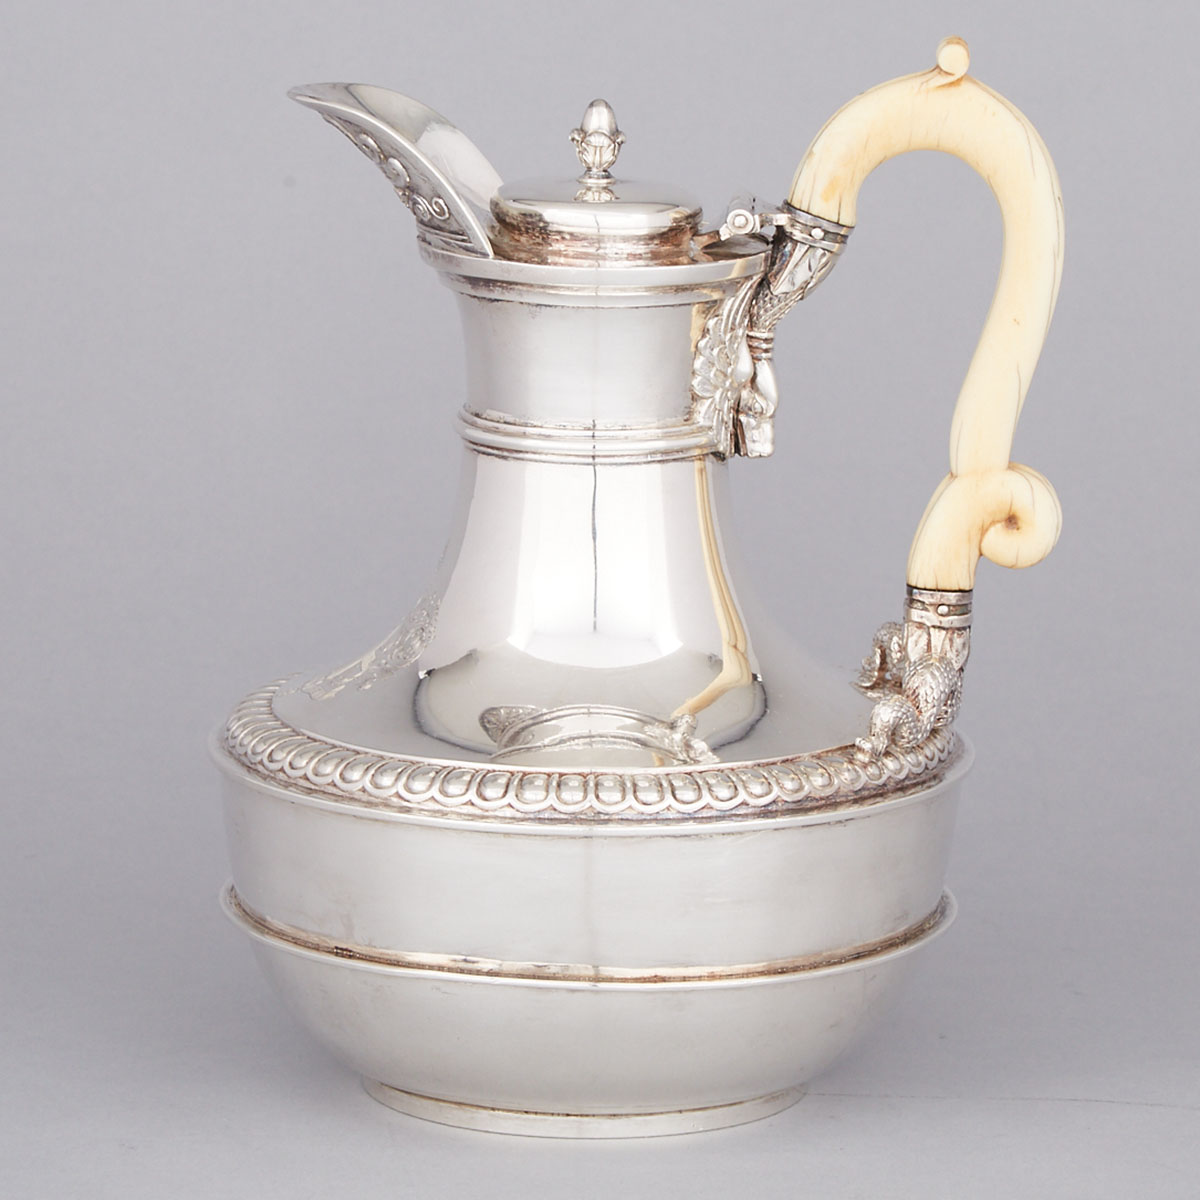 George III Silver Hot Water Pot, Paul Storr, London, 1811